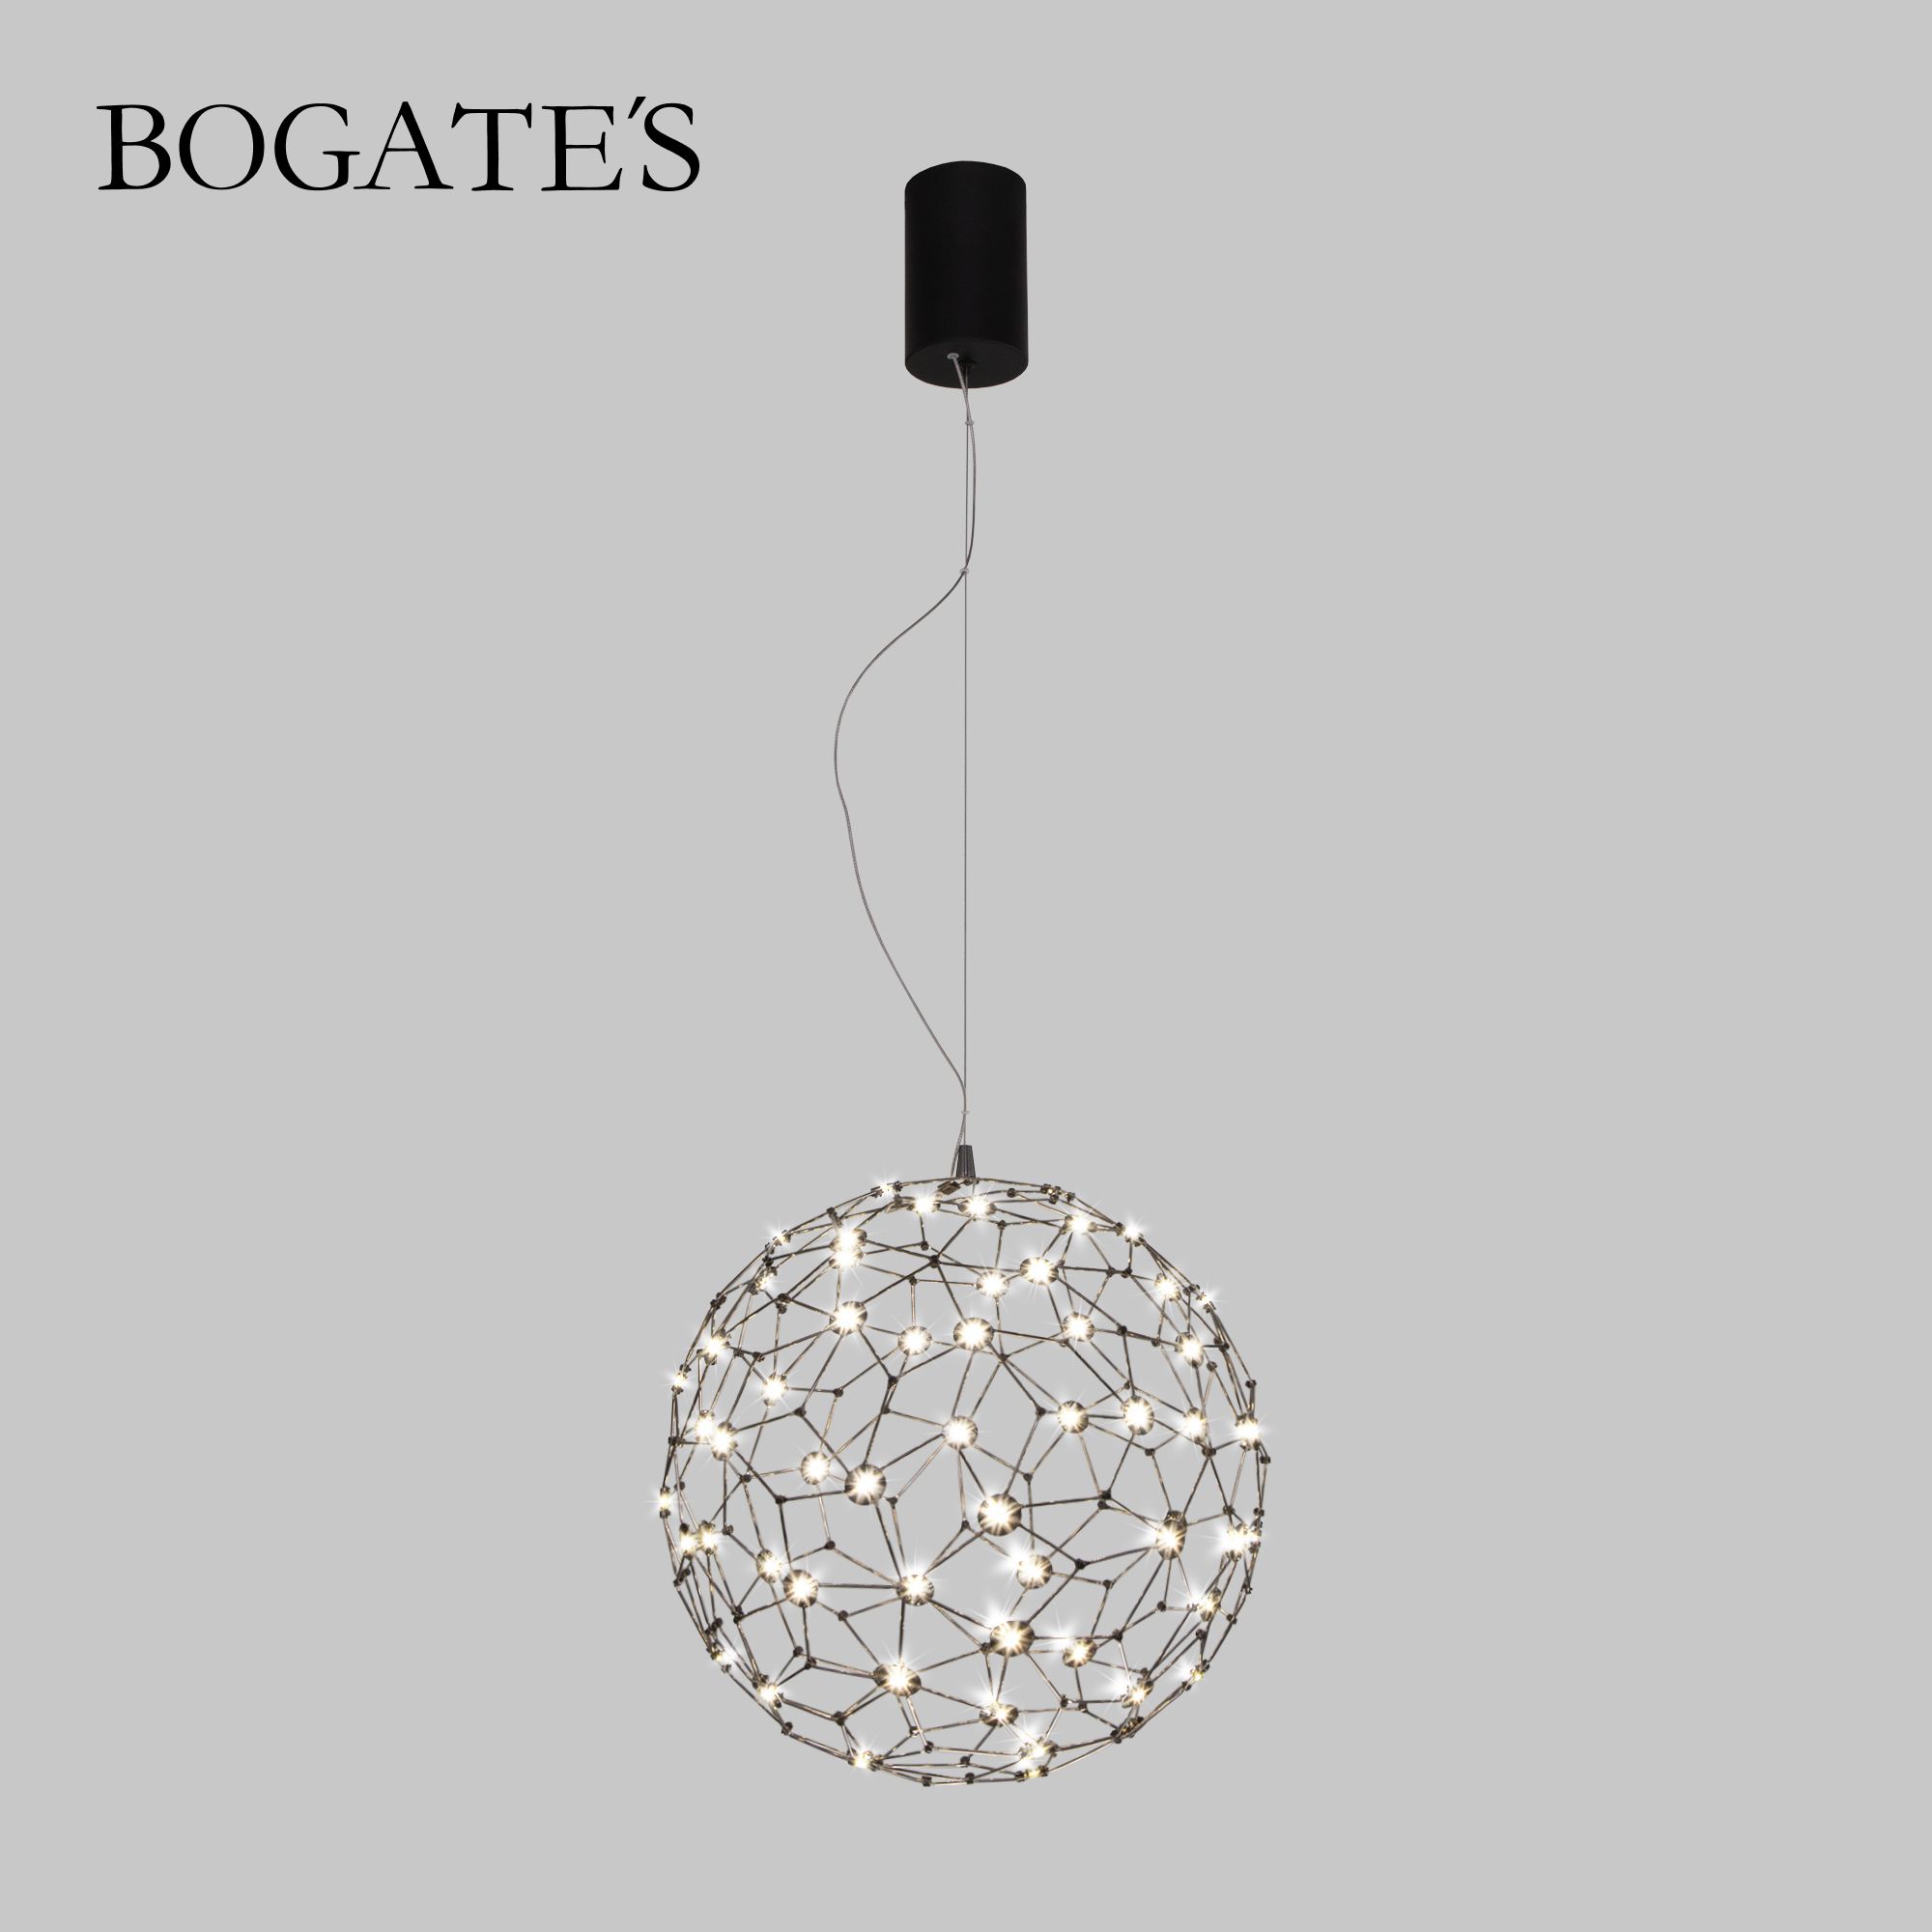 Подвесной светодиодный светильник Bogate's Alioth 451/1 чёрный жемчуг 30W 4000K